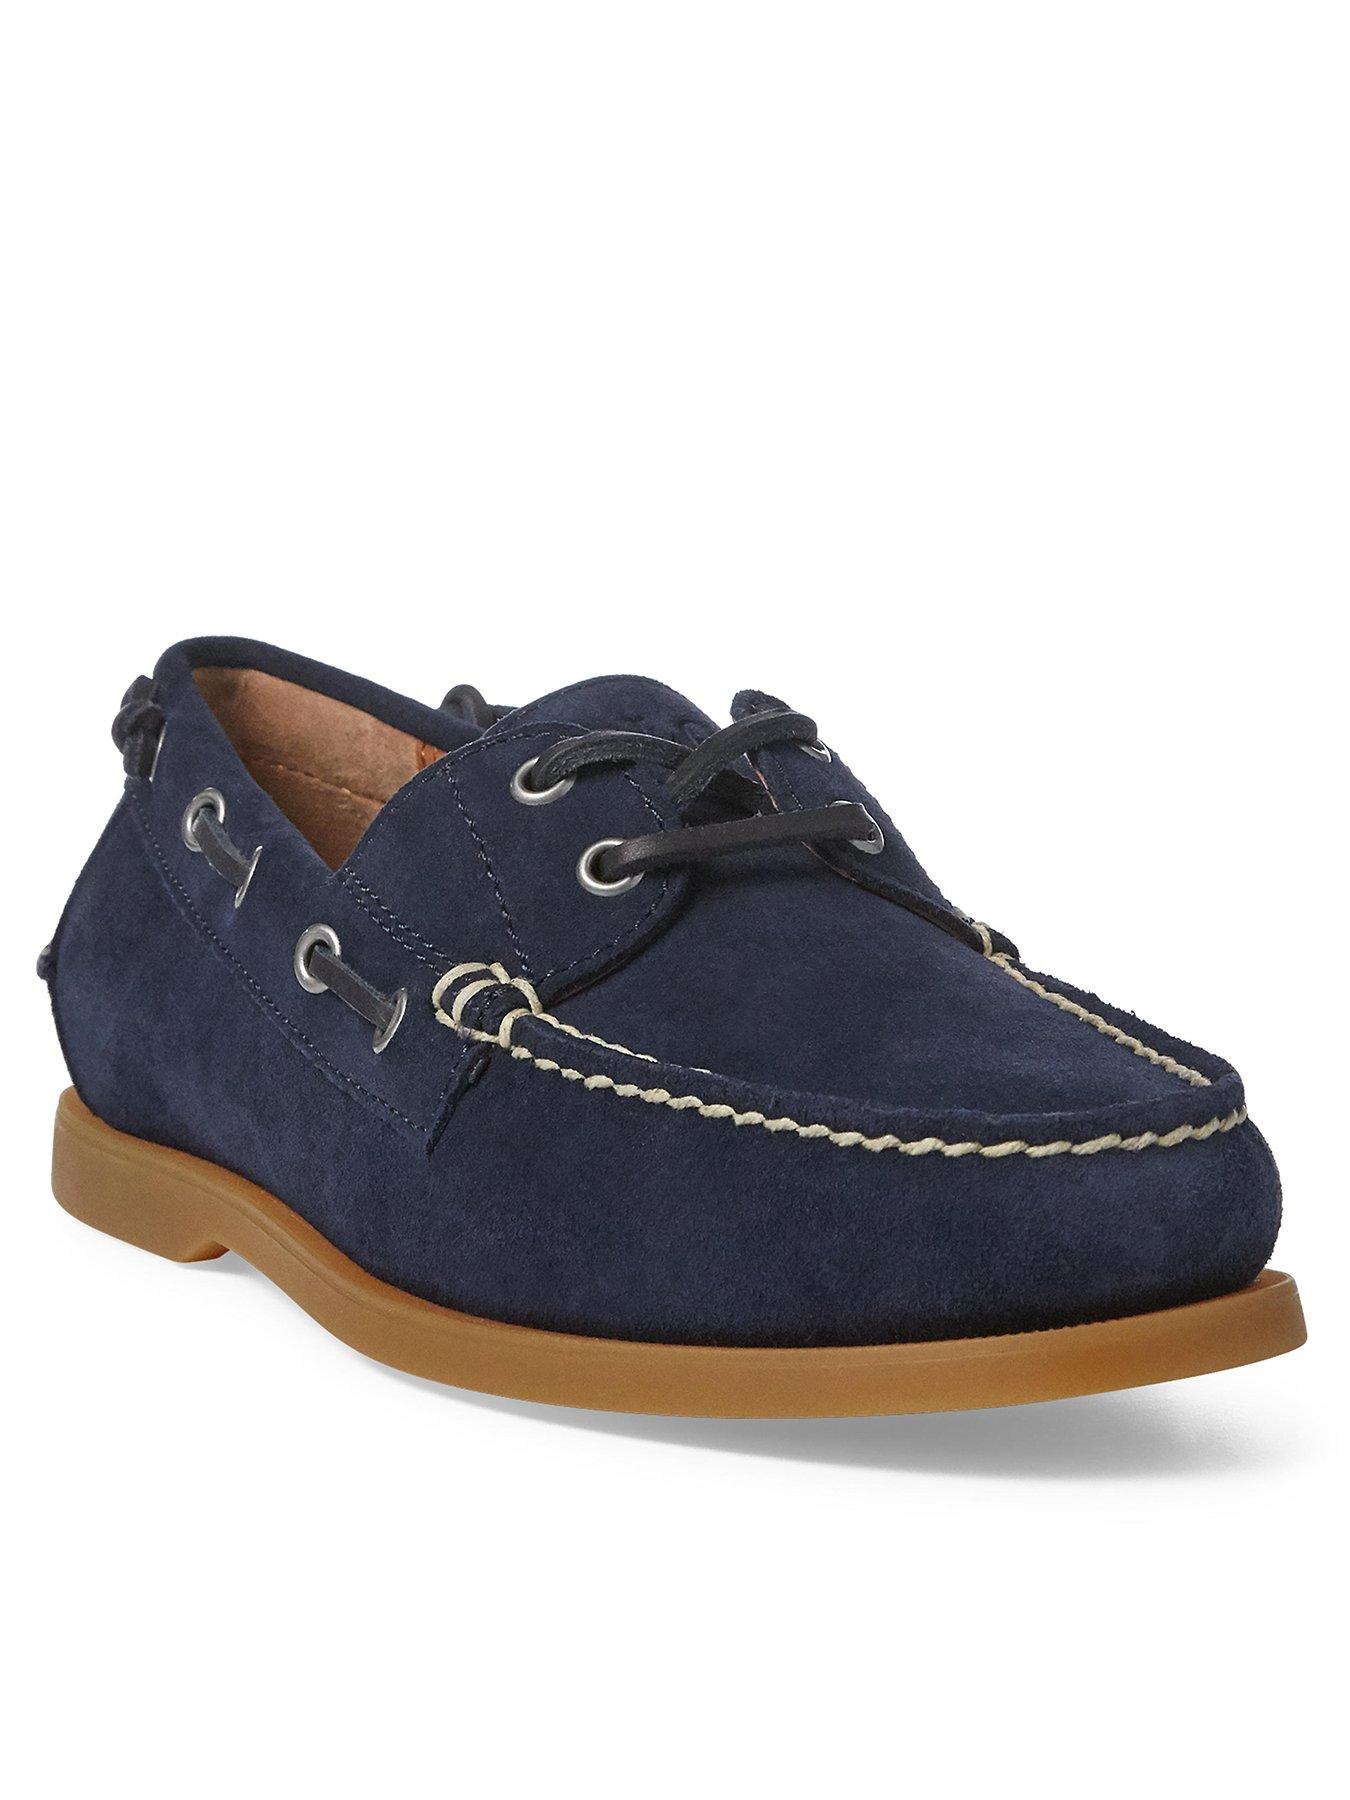 Polo Ralph Lauren Merton Suede Boat Shoes - Newport Navy 